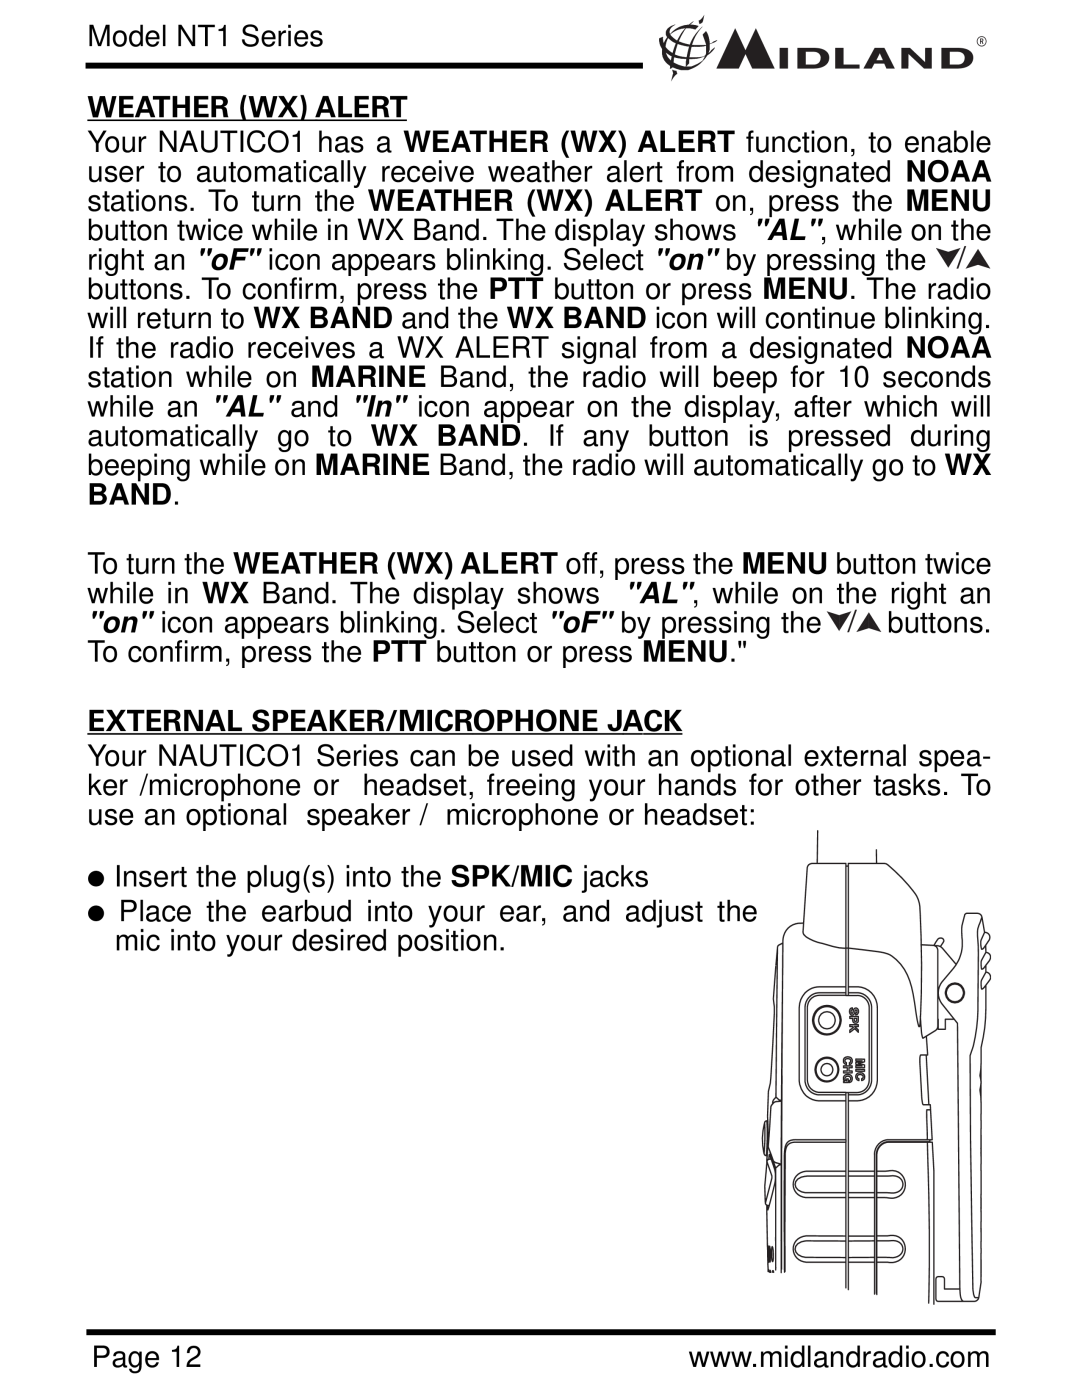 Midland Radio NT1VP, NT1 SERIES owner manual Weather Wx Alert, External Speaker/Microphone Jack, Model NT1 Series 